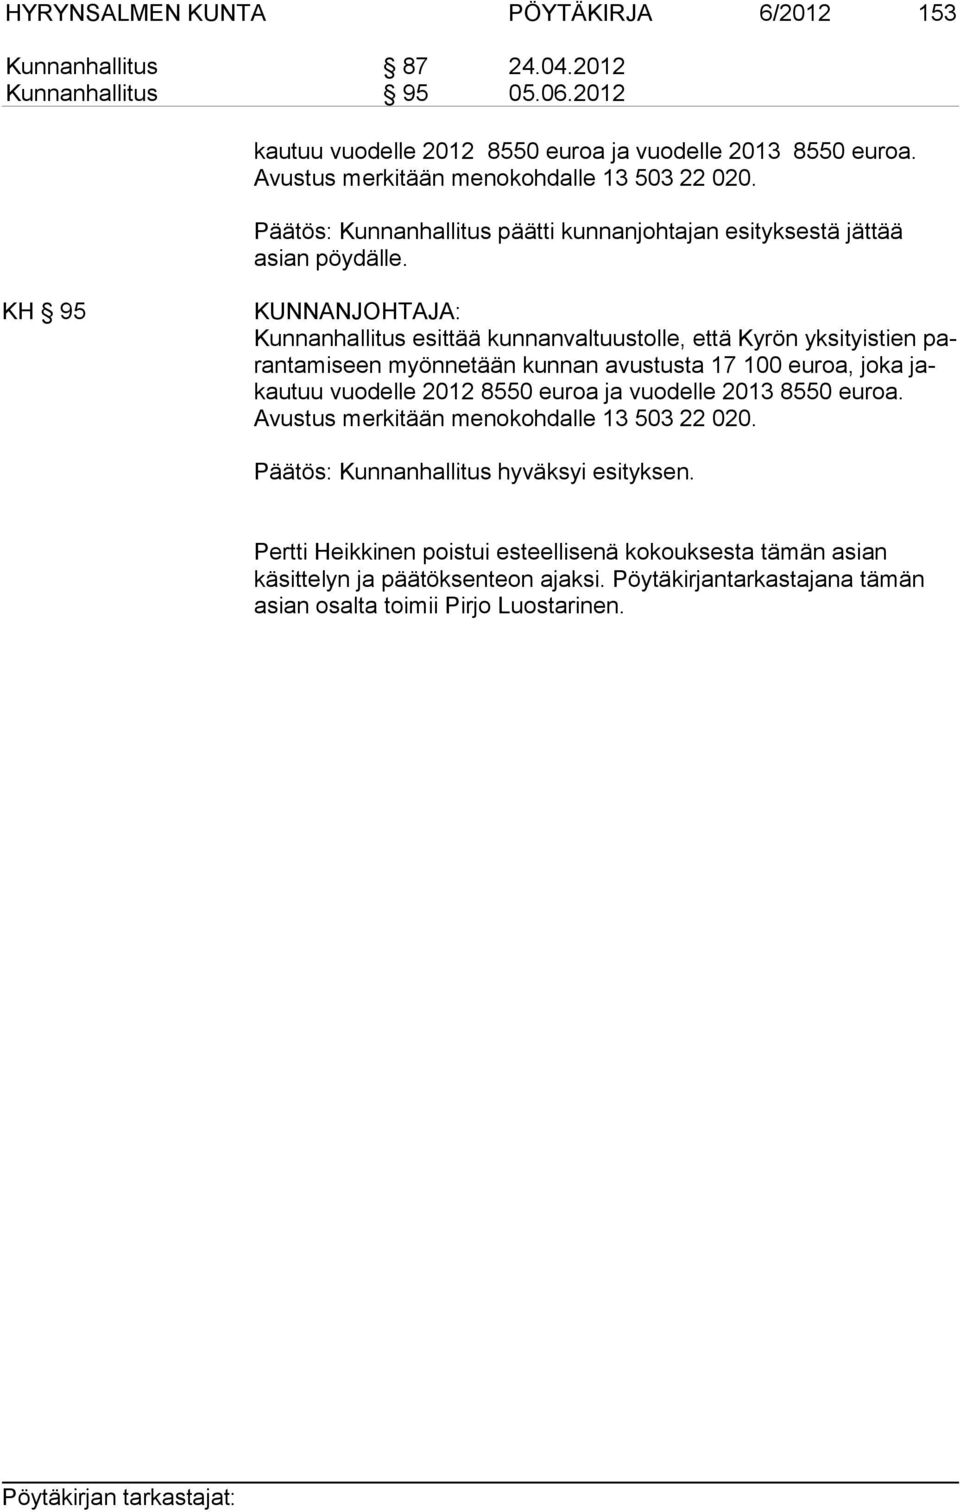 KH 95 Kunnanhallitus esittää kunnanvaltuustolle, että Kyrön yksityistien parantamiseen myönnetään kunnan avustusta 17 100 euroa, joka jakautuu vuodelle 2012 8550 euroa ja vuodelle 2013